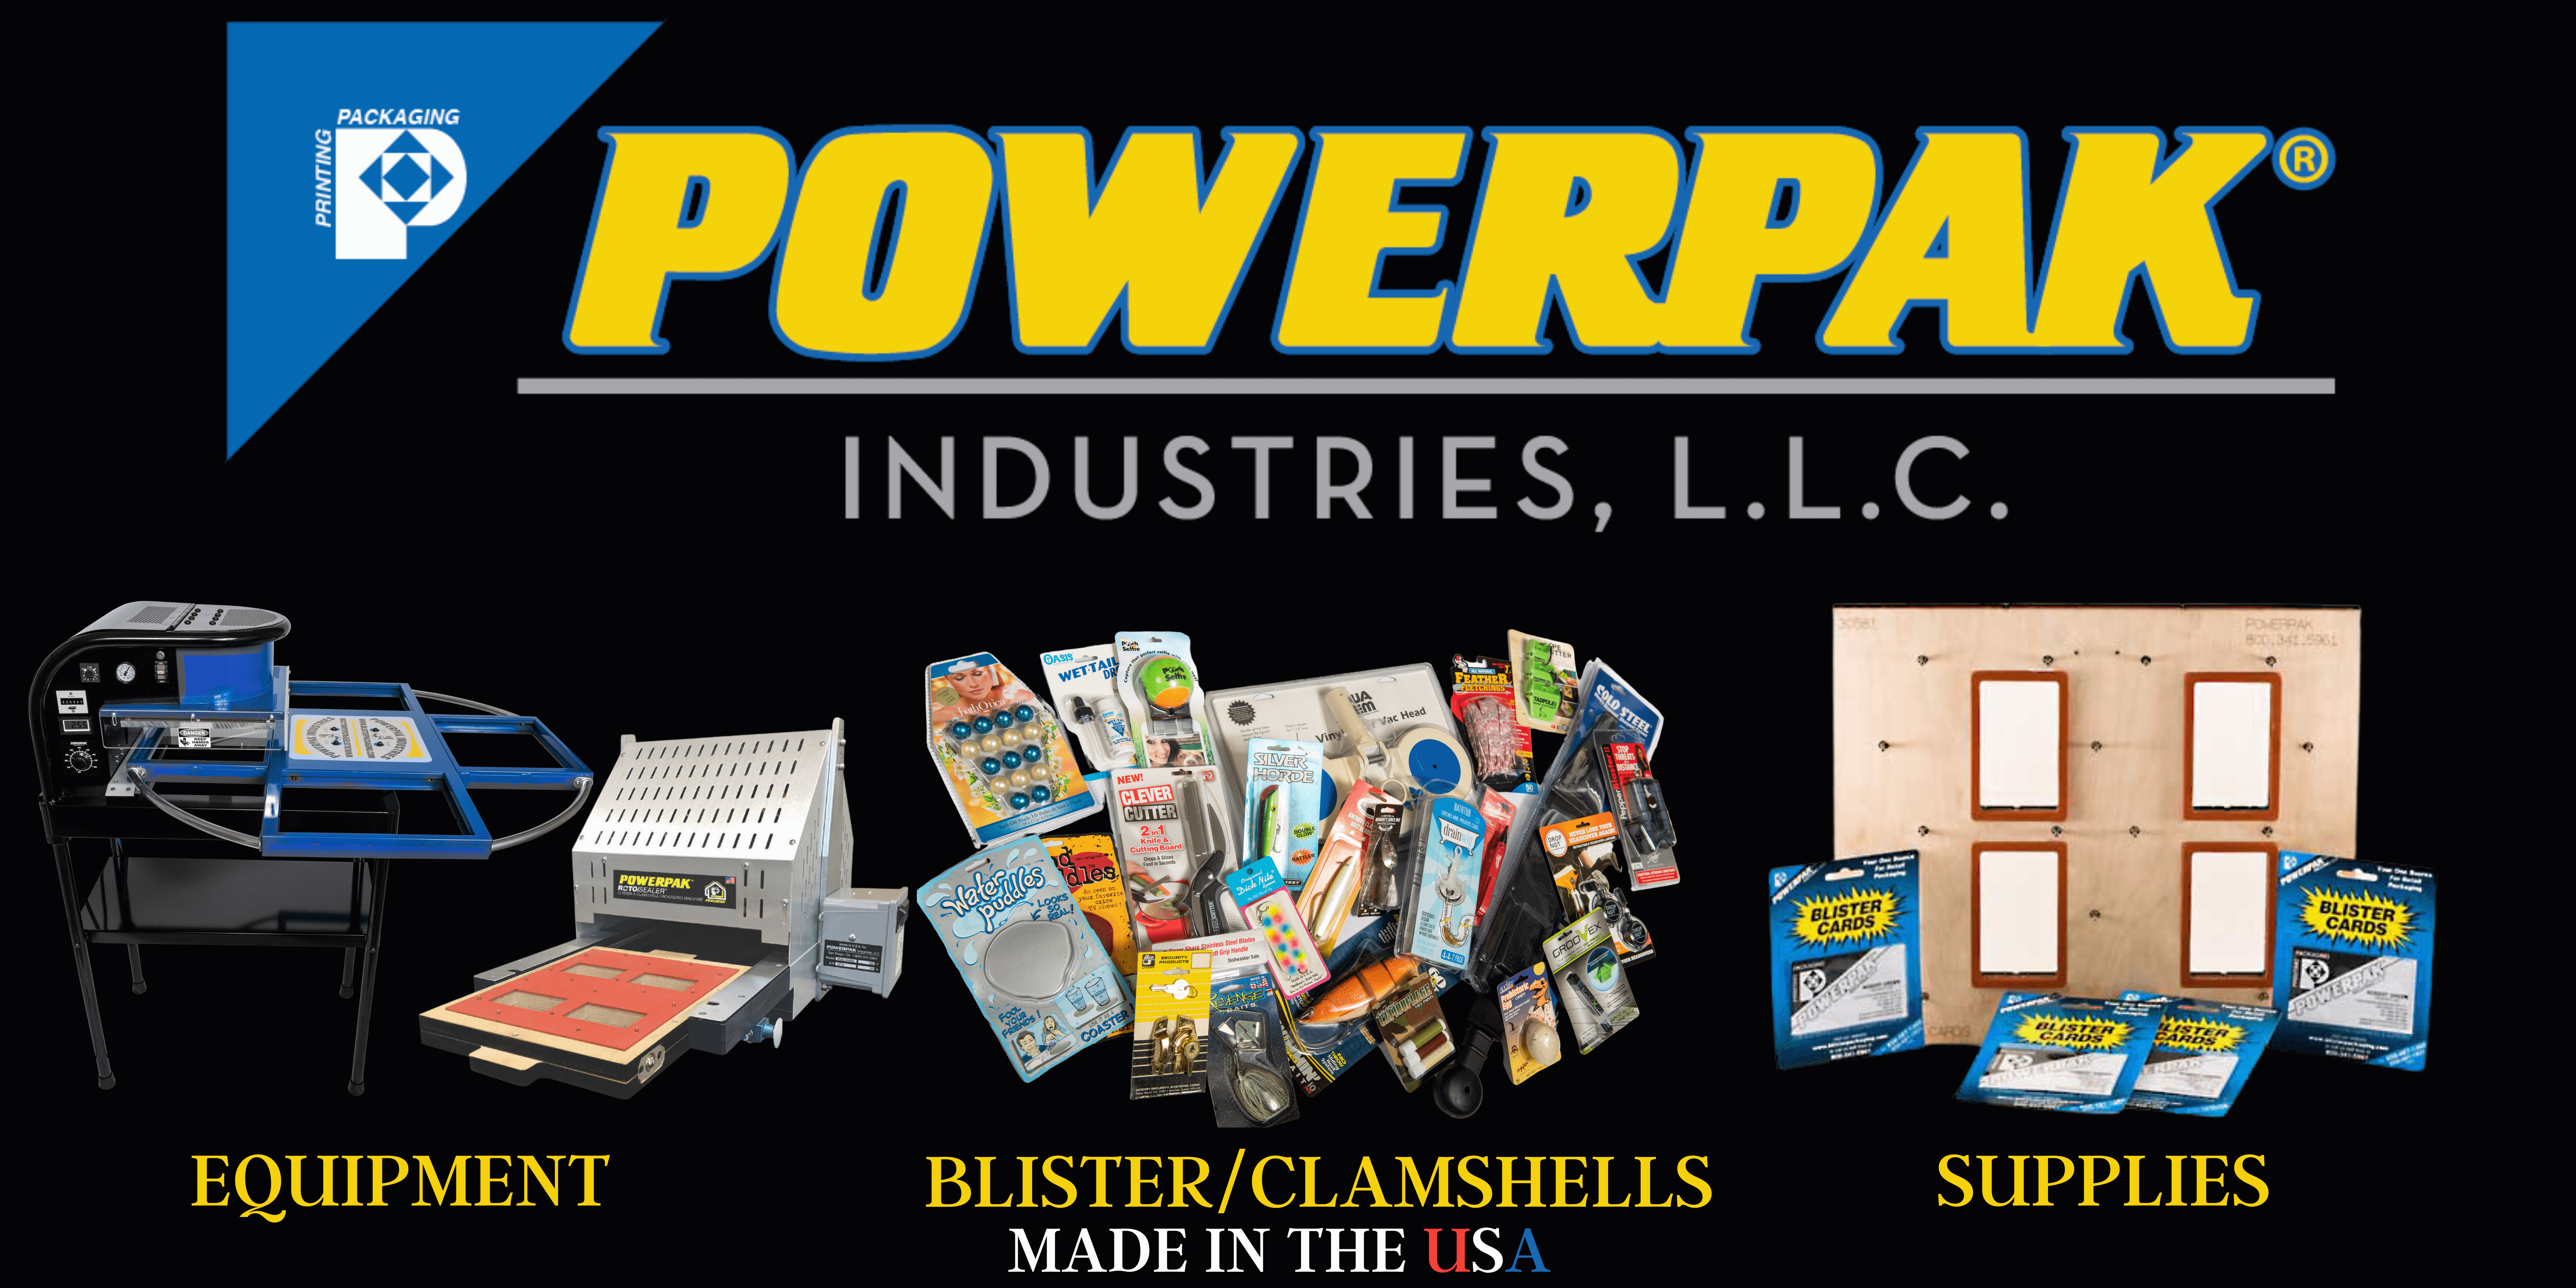 Blister Packaging: POWERPACK Industries, LLC